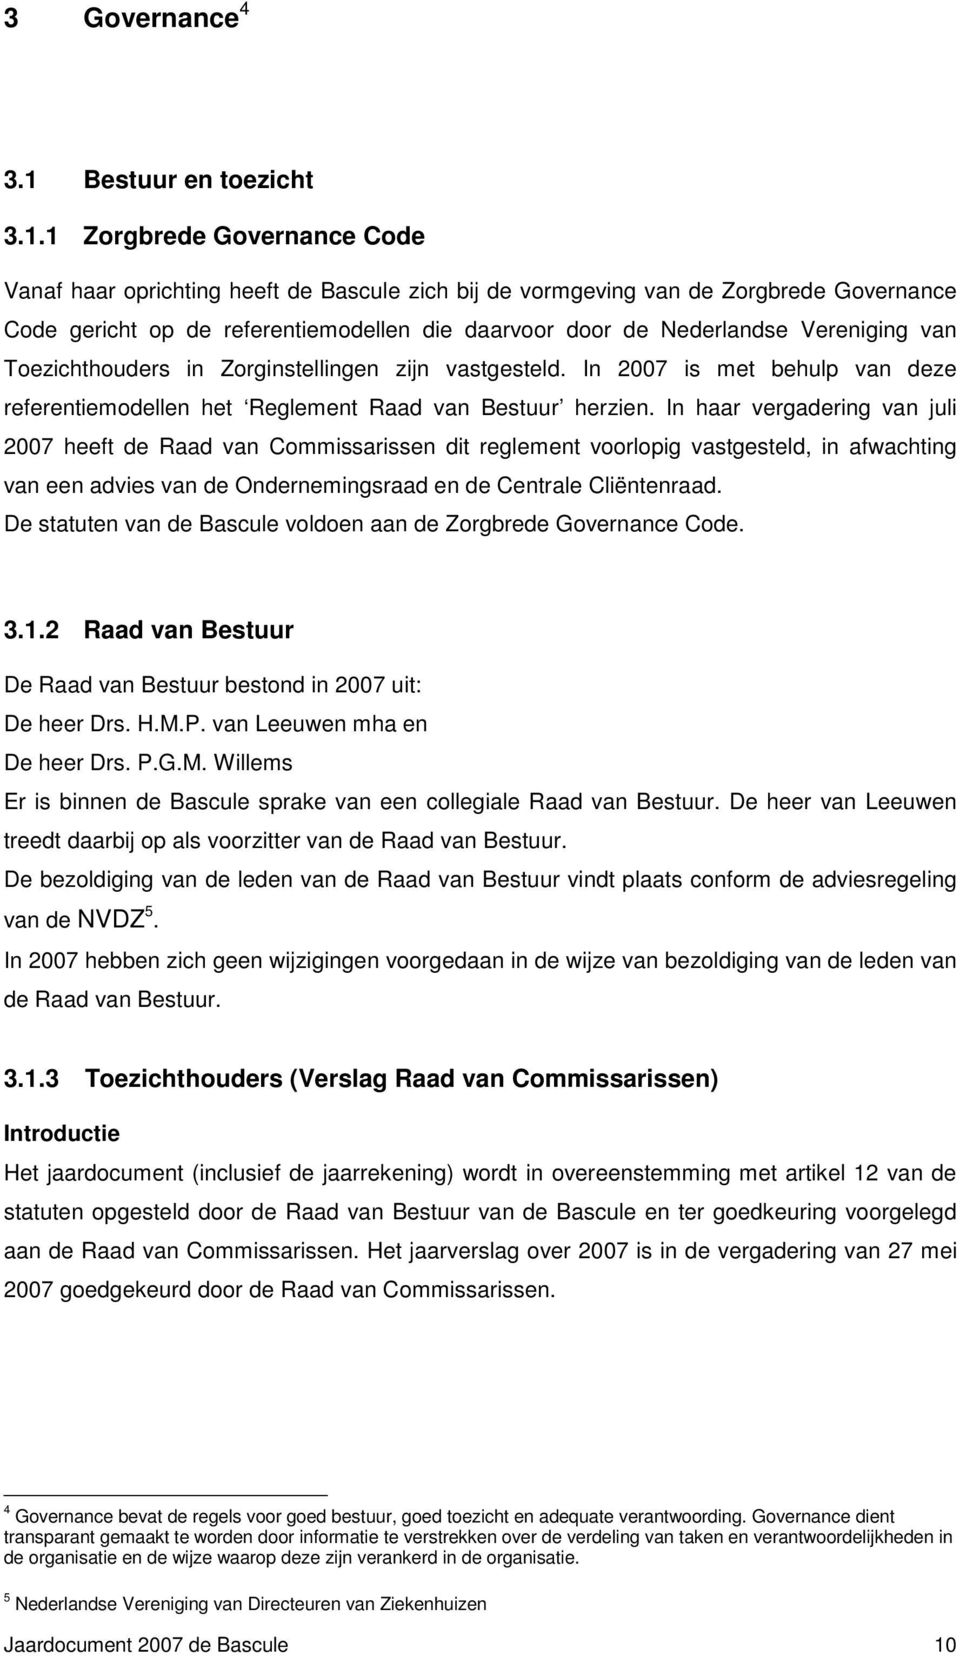 1 Zorgbrede Governance Code Vanaf haar oprichting heeft de Bascule zich bij de vormgeving van de Zorgbrede Governance Code gericht op de referentiemodellen die daarvoor door de Nederlandse Vereniging